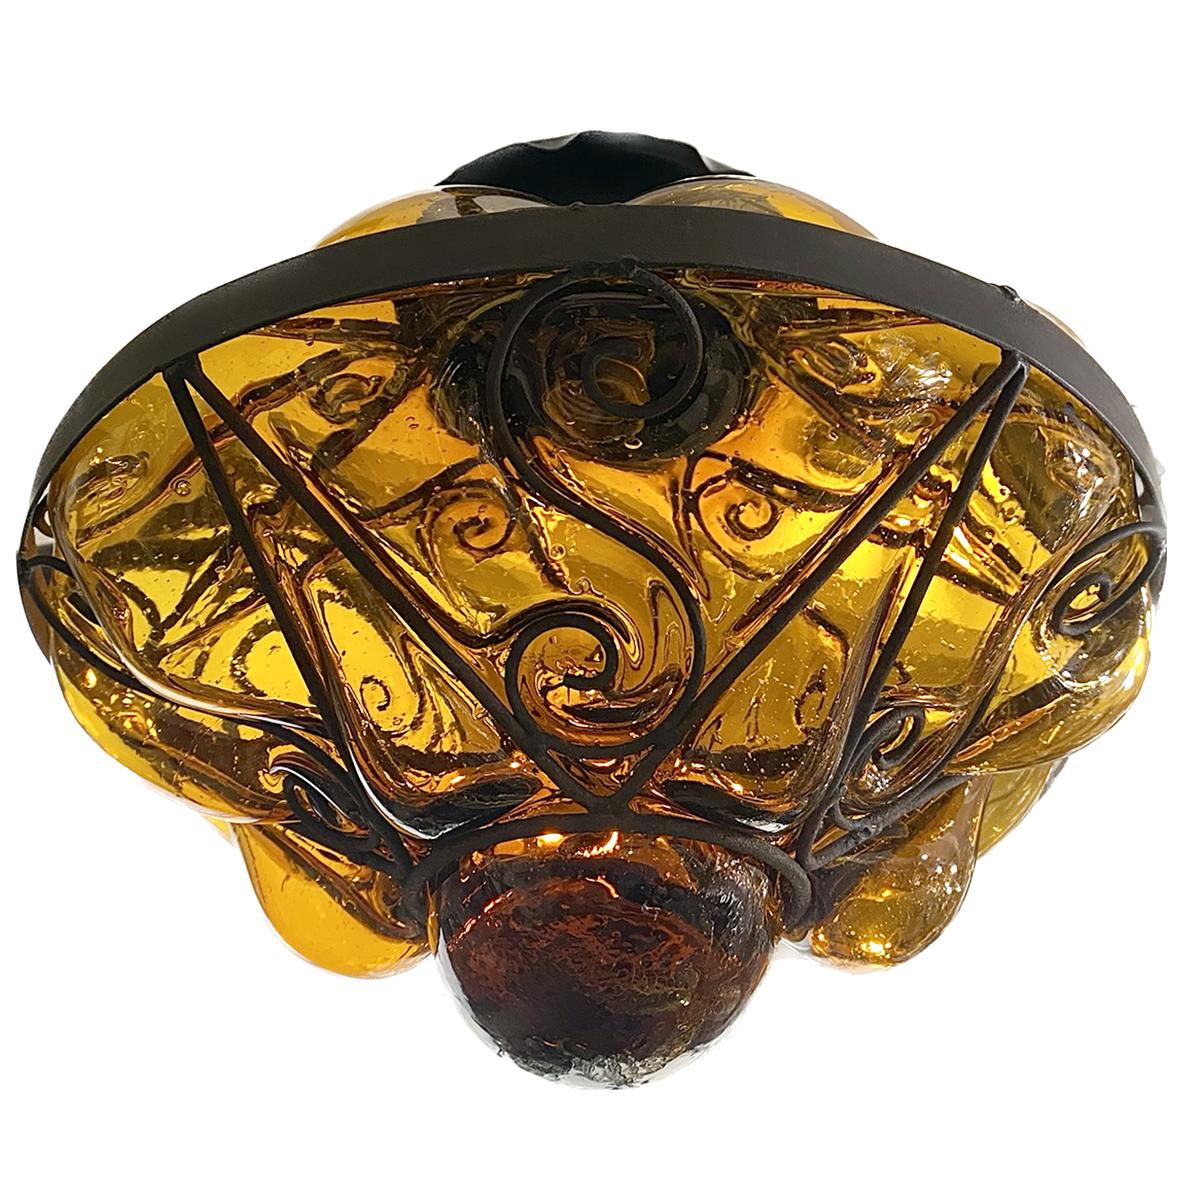 Lanterne italienne en verre soufflé ambré datant des années 1950.

Mesures :
Hauteur de chute : 15